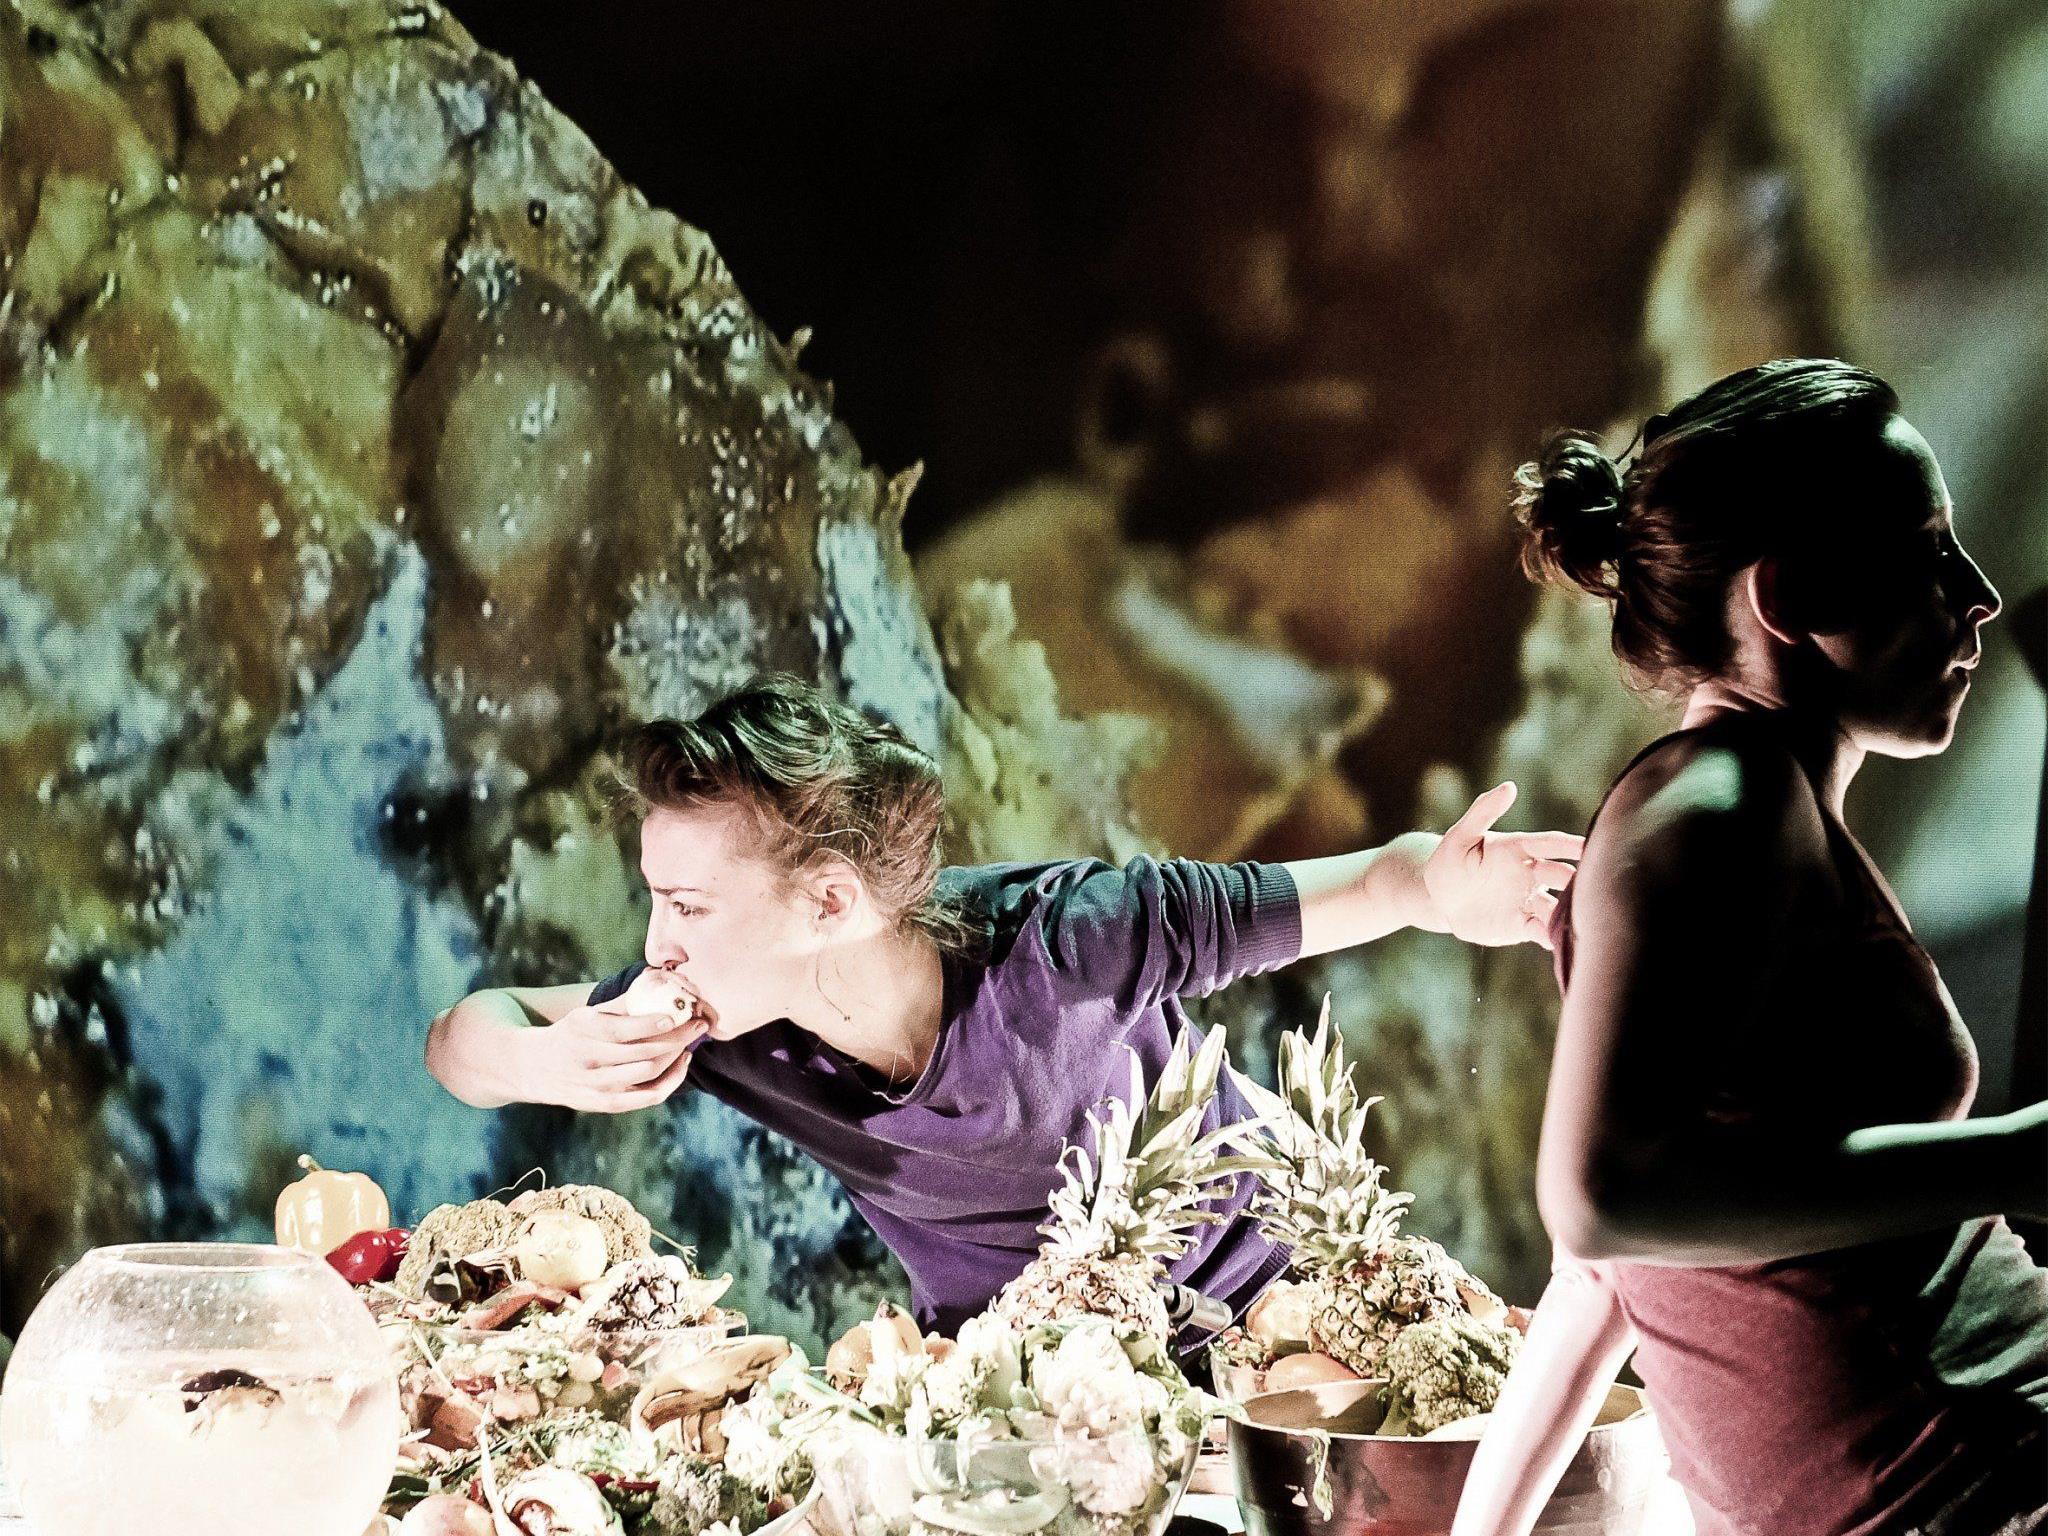 Deep Dish ist ein weiterer Teil der The Perfect Garden Serie von Liquid Loft mit dem bildenden Künstler Michel Blazy.